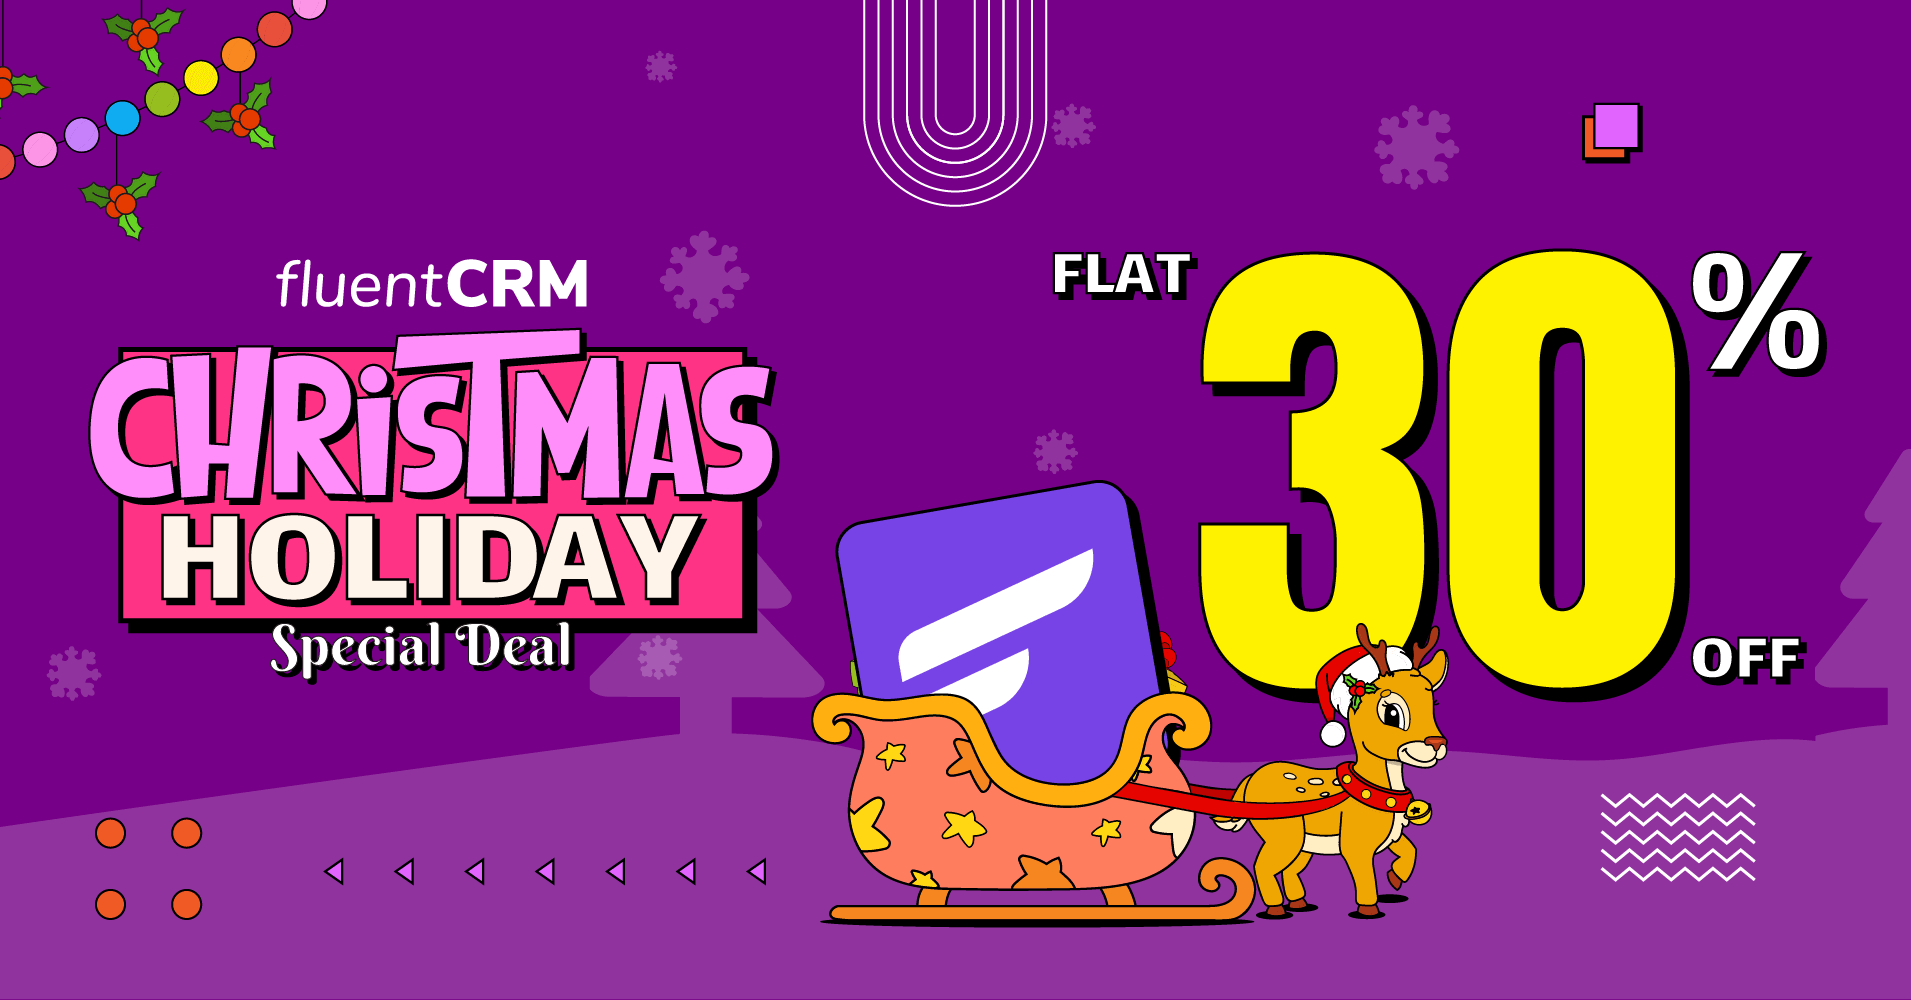 FluentCRM Christmas Holiday Special Deal